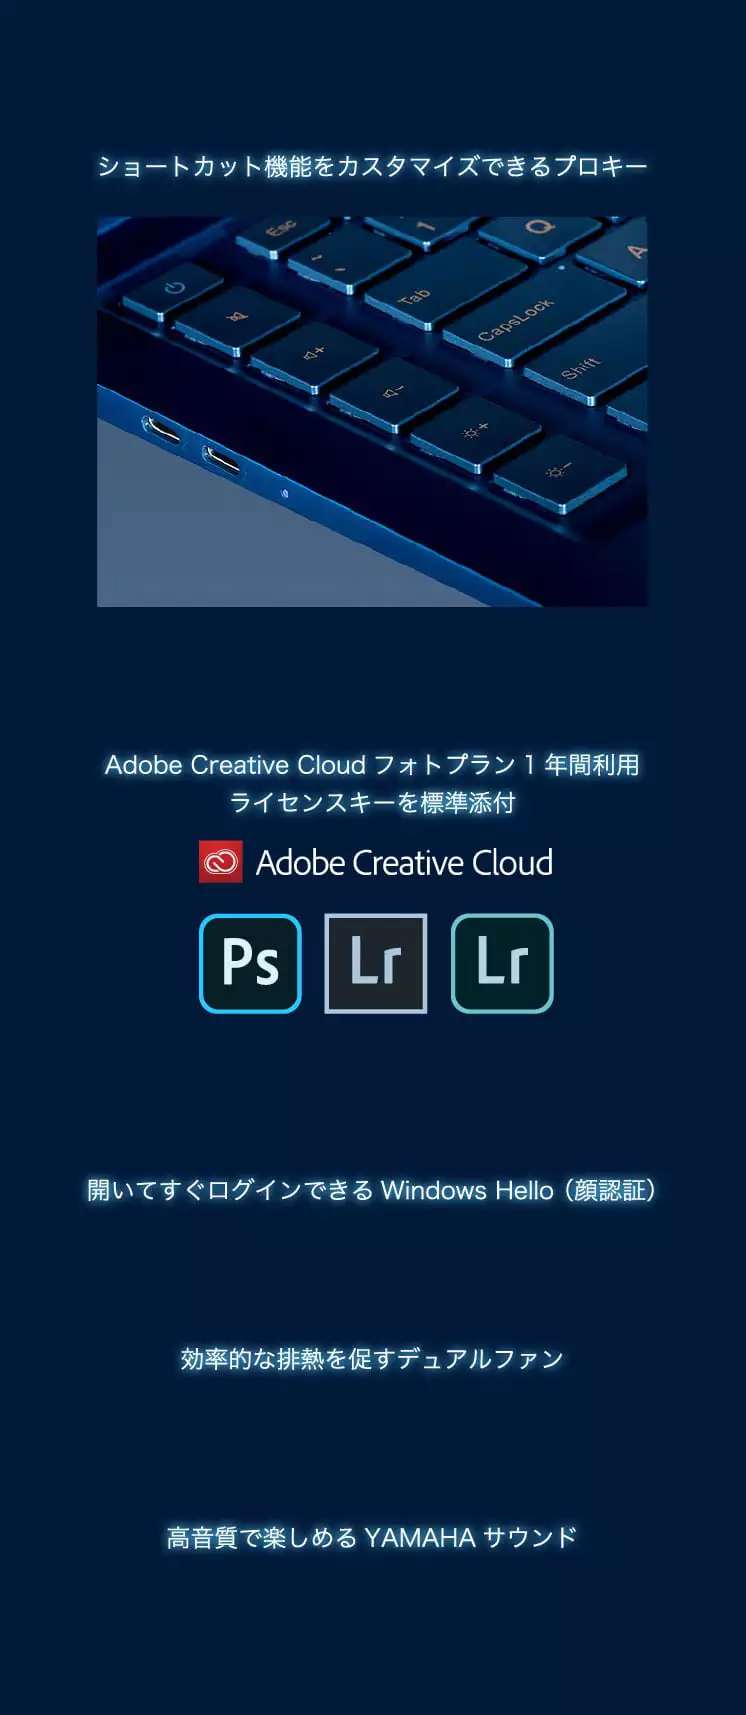 ショートカット機能をカスタマイズできるプロキー Adobe Creative Cloudフォトプラン1年間利用ライセンスキーを標準添付 開いてすぐログインできるWindows Hello (顔認証) 効率的な排熱を促すデュアルファン 高音質で楽しめるYAMAHAサウンド